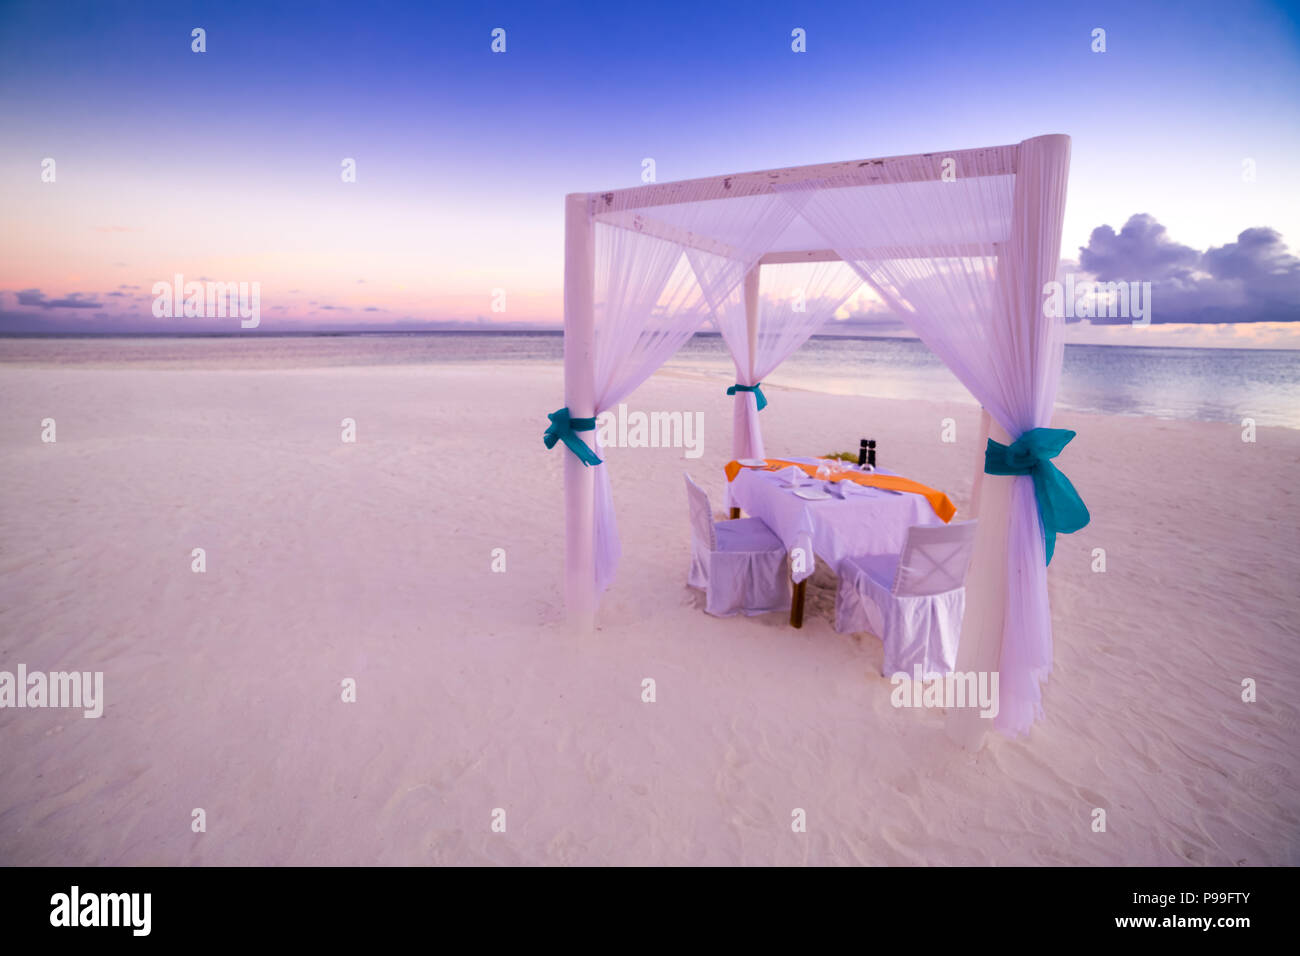 Cena romántica el cuadro set-up para una luna de miel en la playa bajo el cielo del atardecer. Concepto de boda y luna de miel exóticas Foto de stock